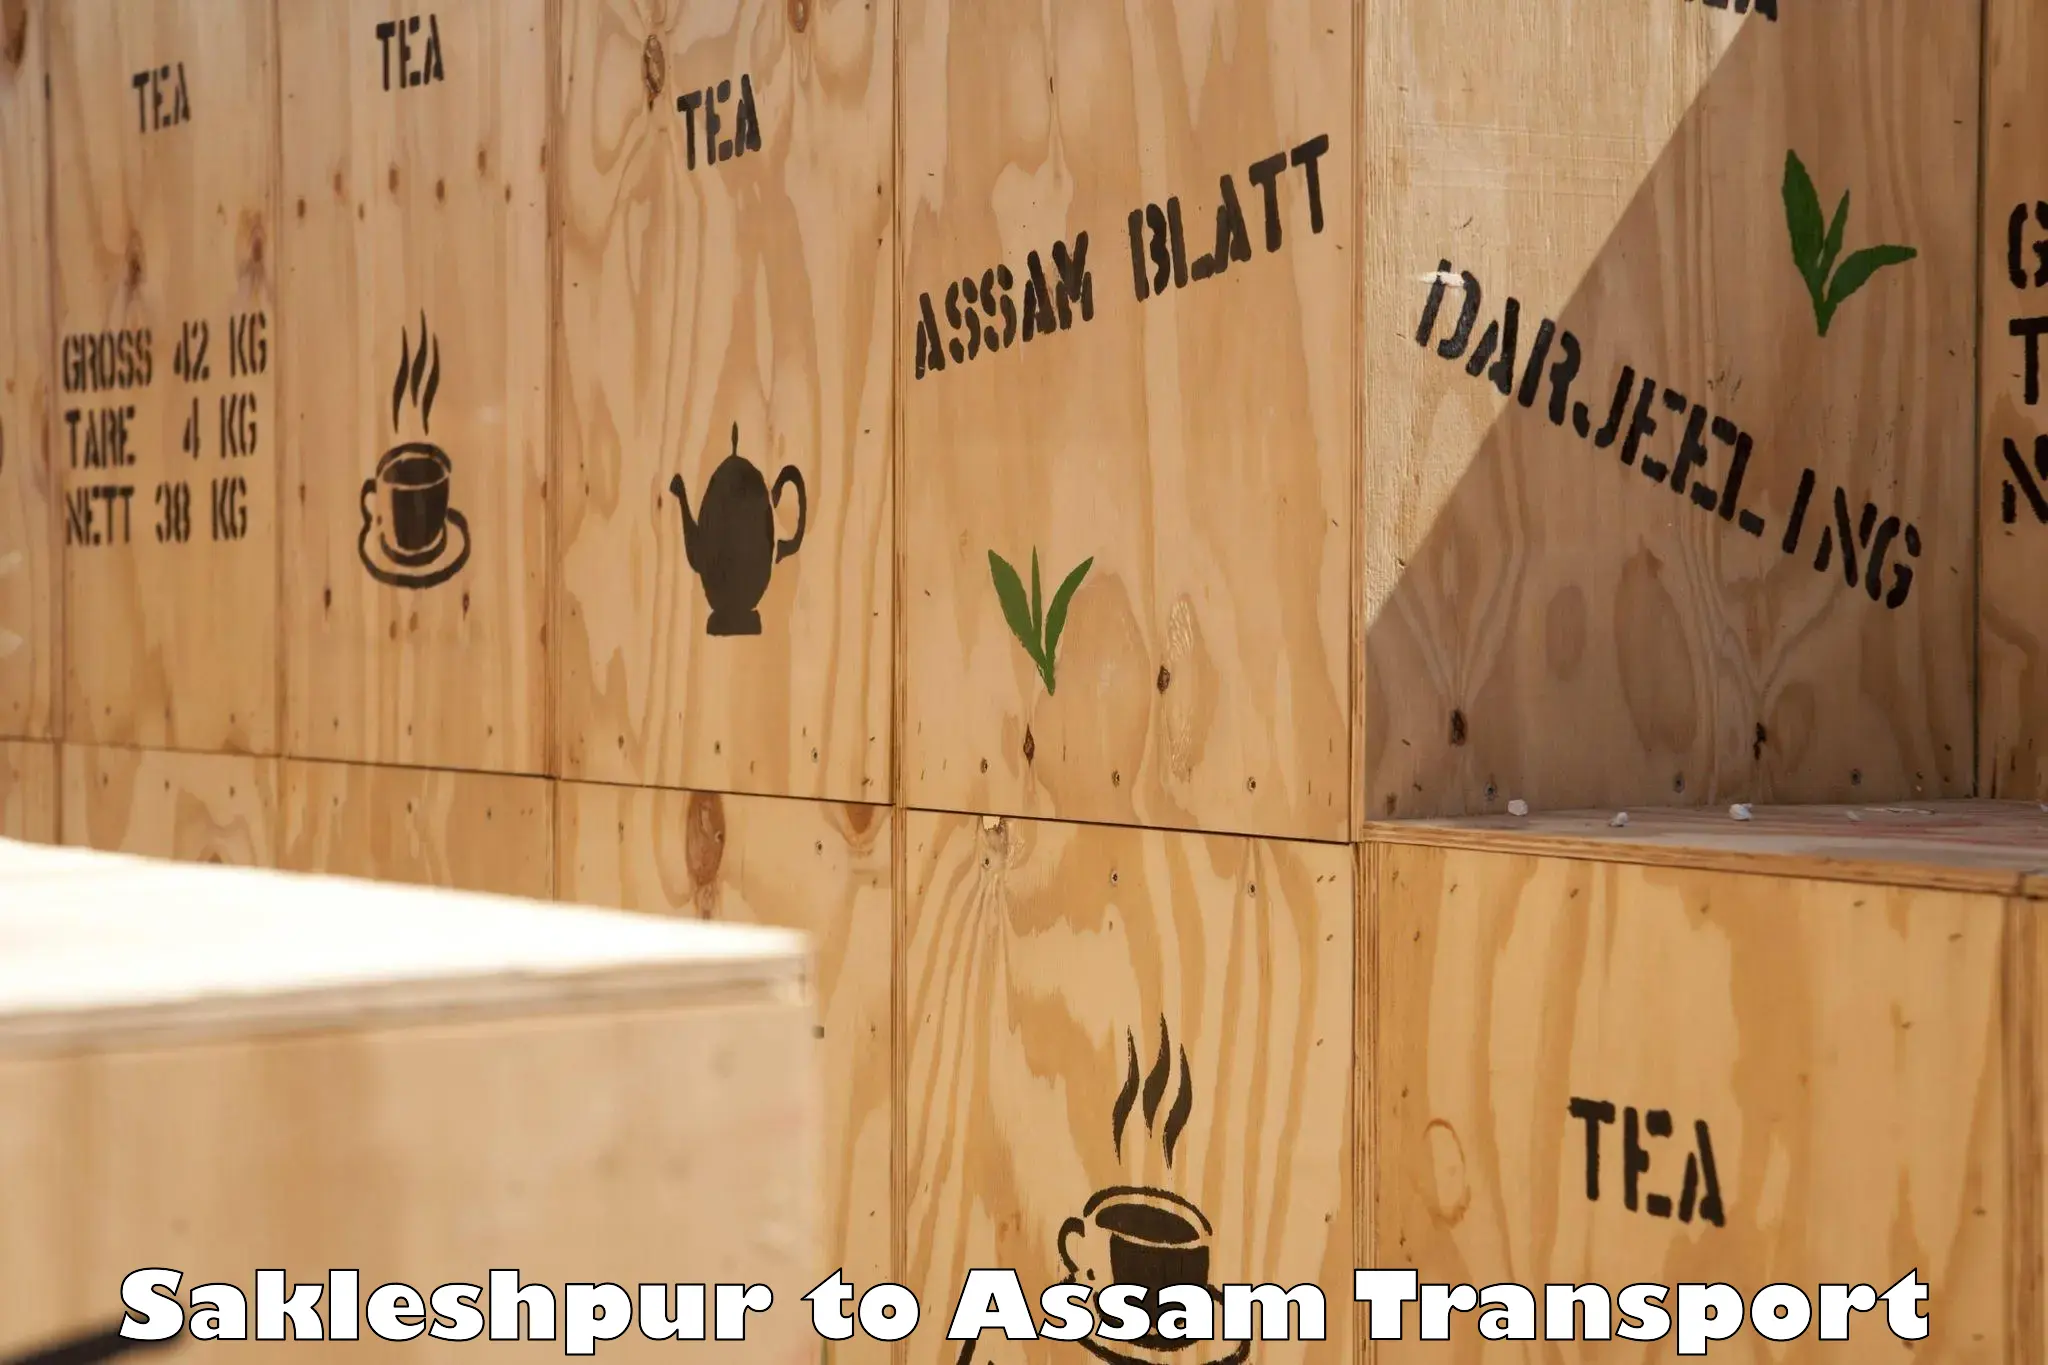 Cargo transport services Sakleshpur to Behali